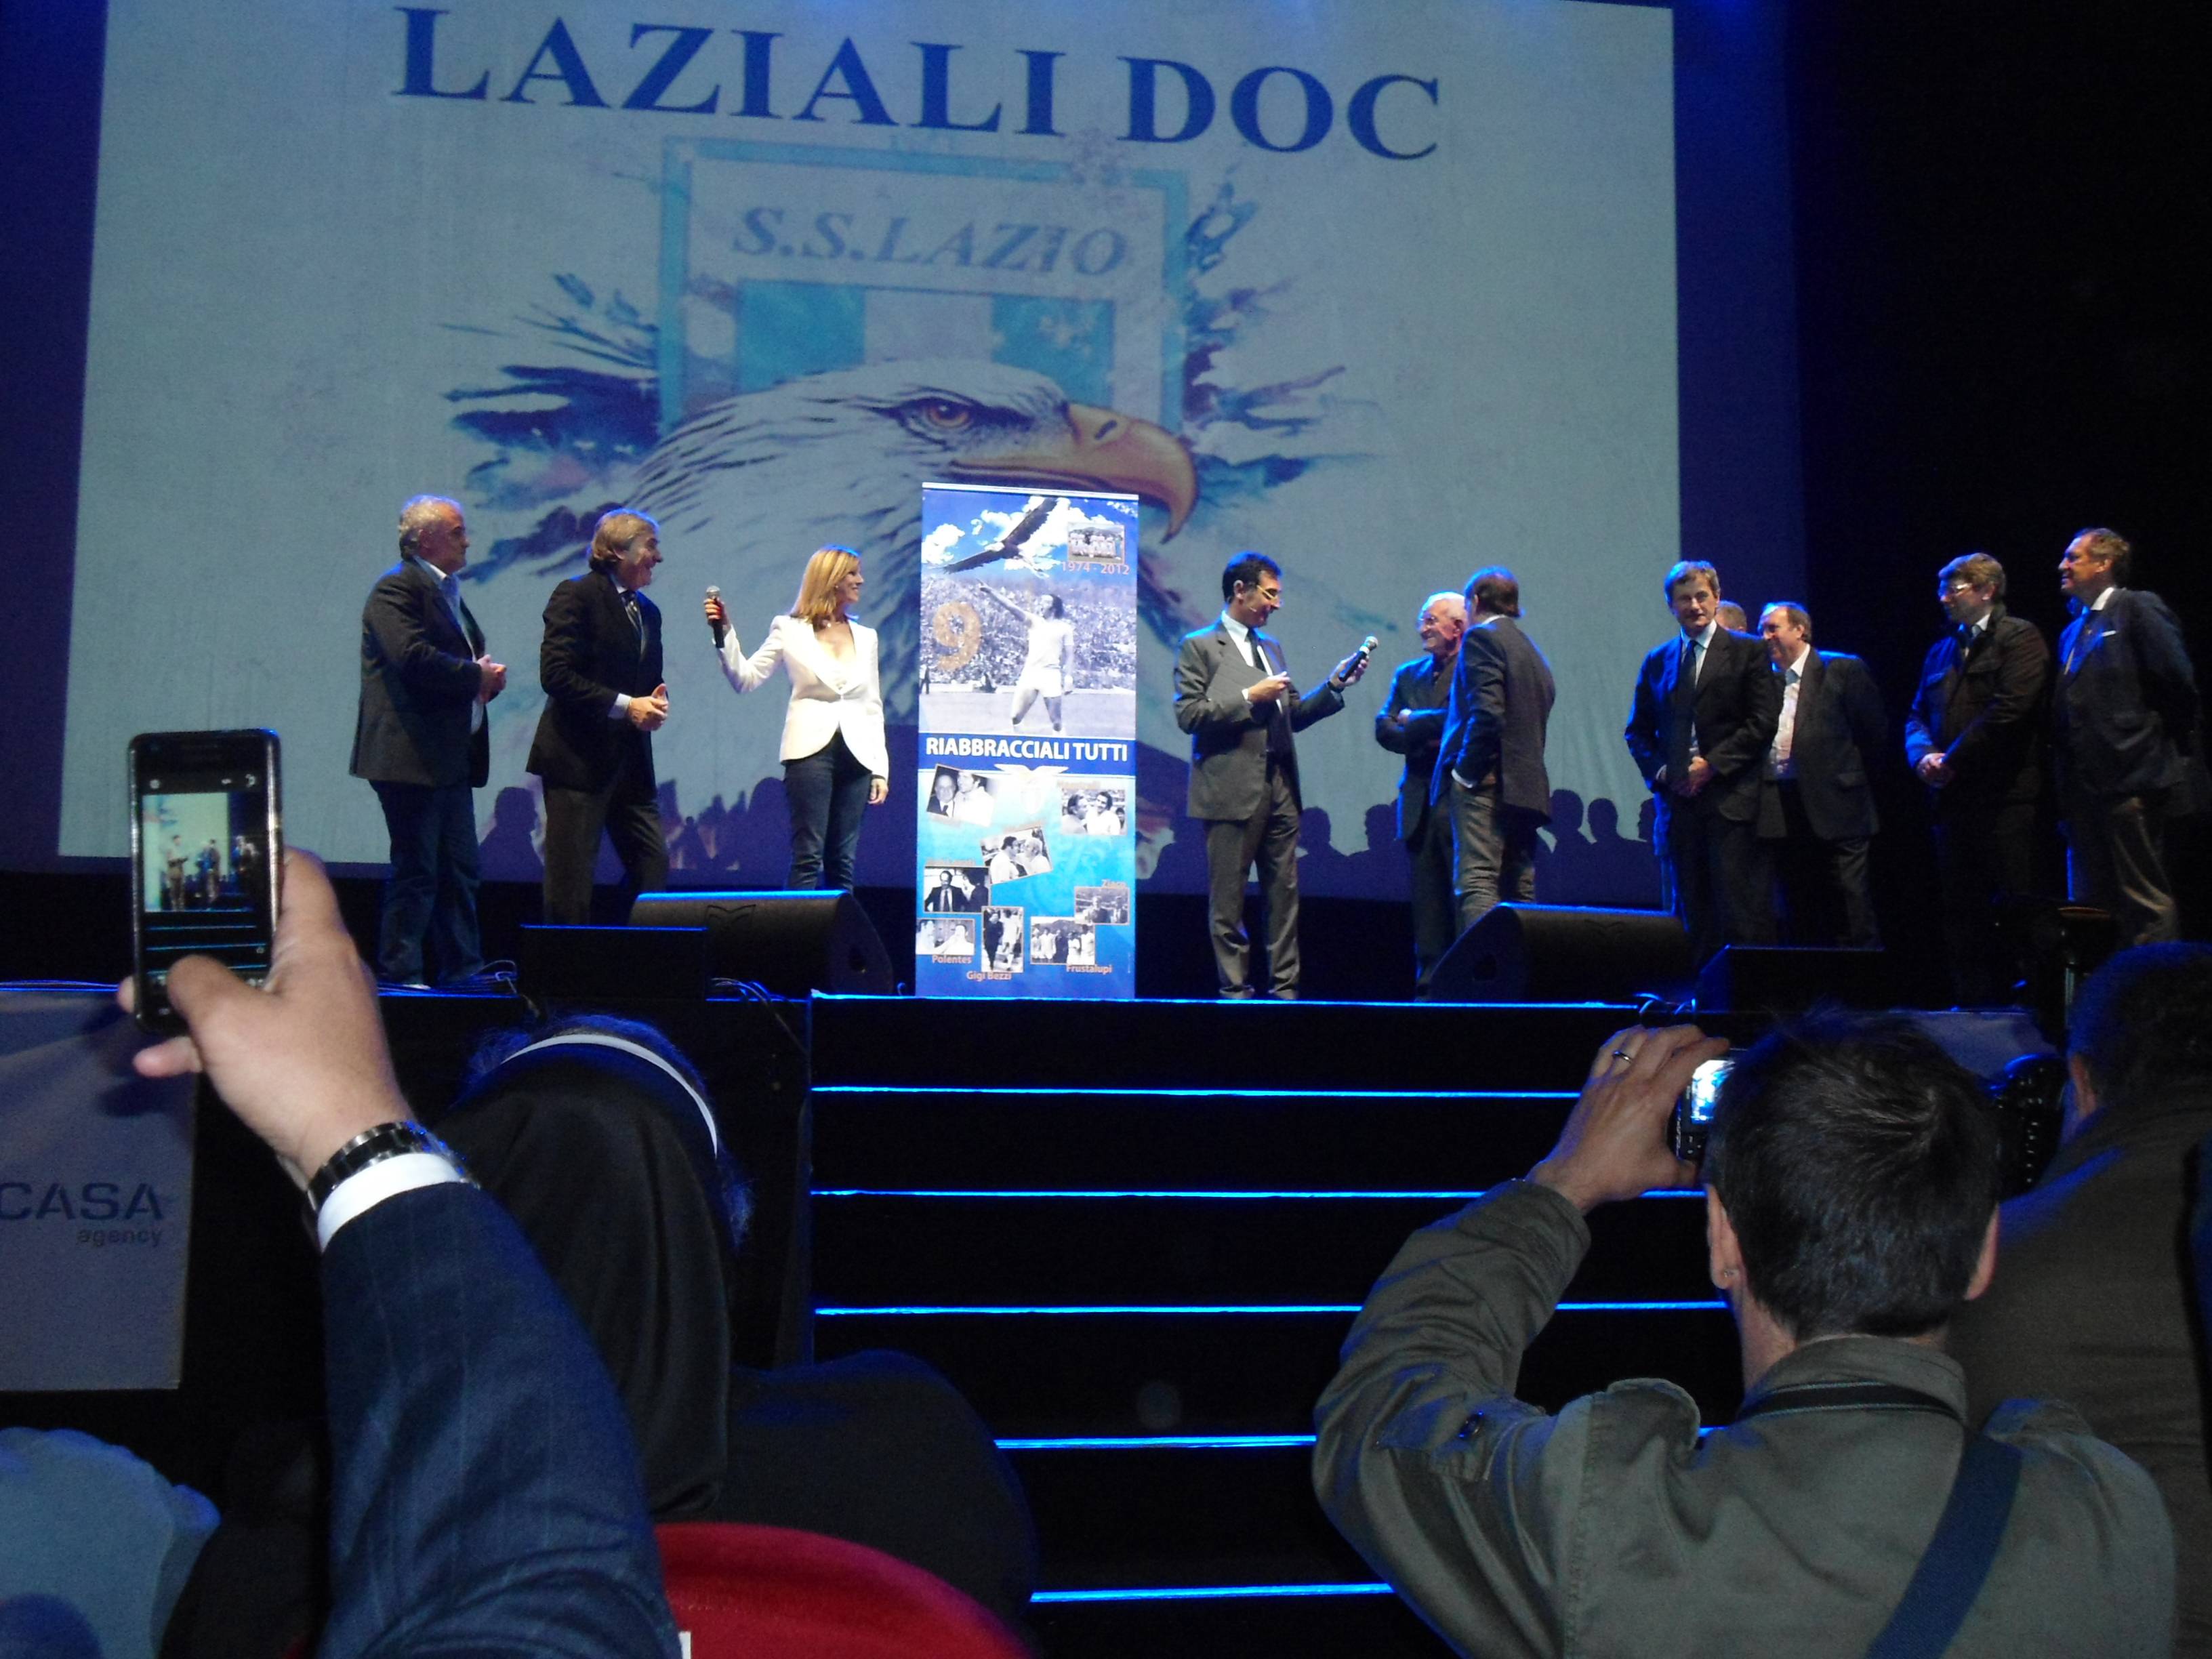 foto-serata-laziali-doc-del-28-maggio-2012-al-gran-teatro